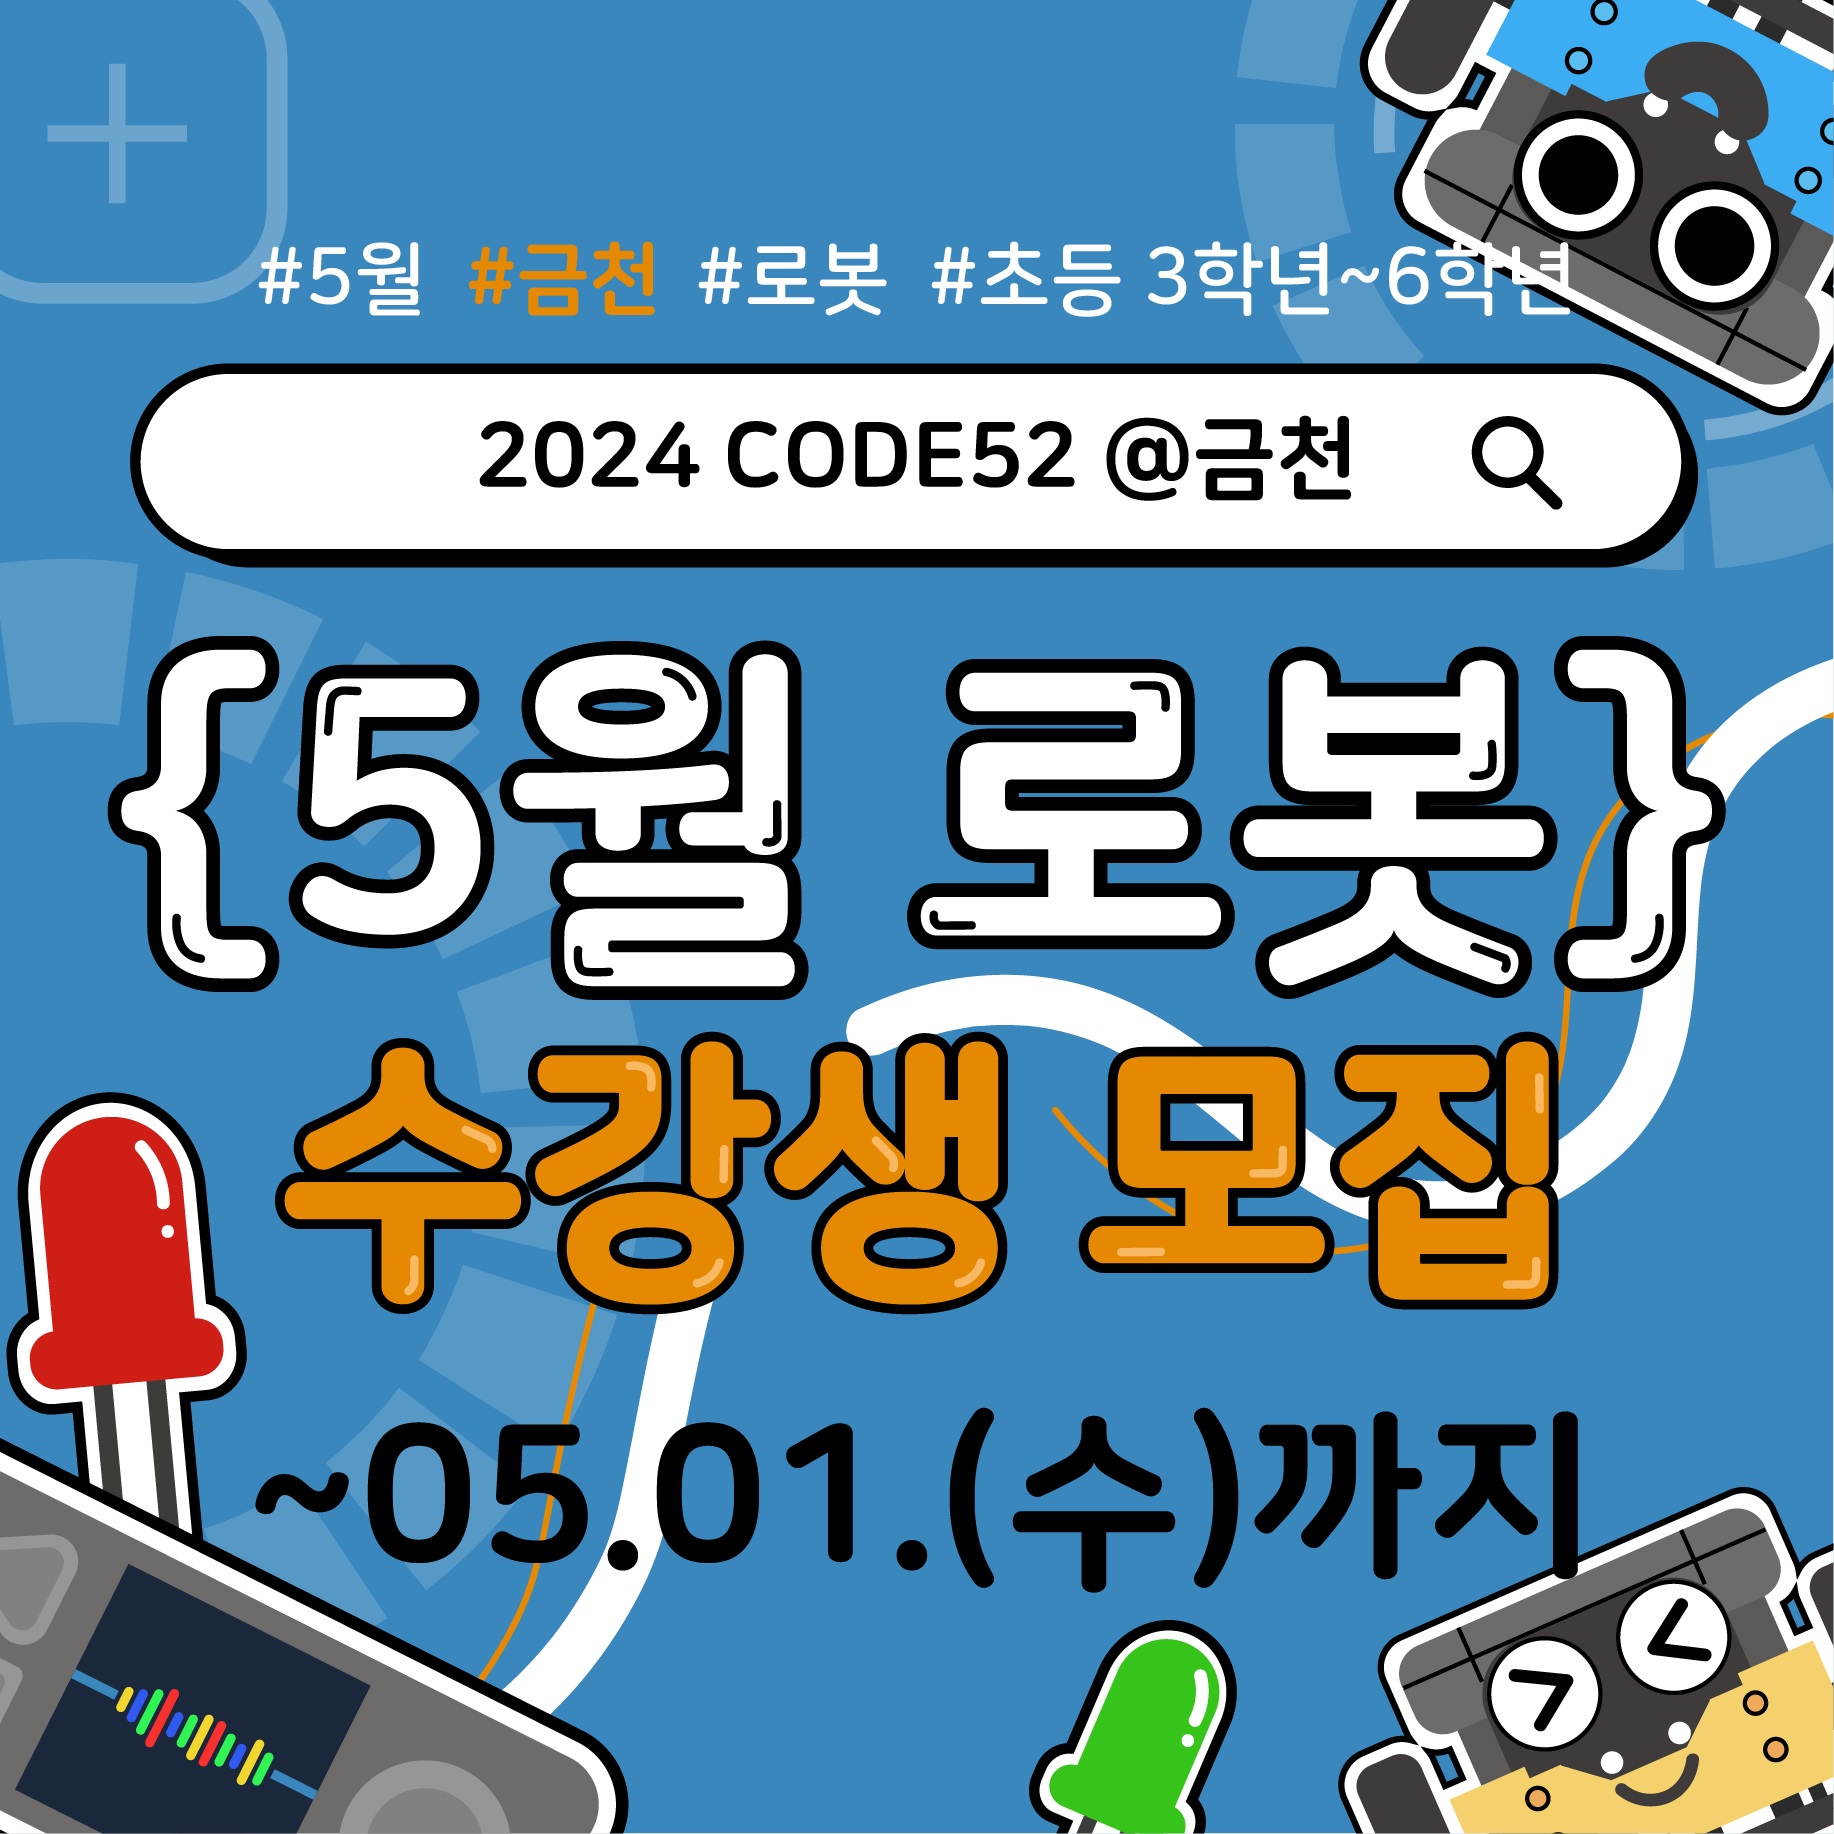 [토요코딩교실] 2024 CODE52 @금천 5월 로봇 교육